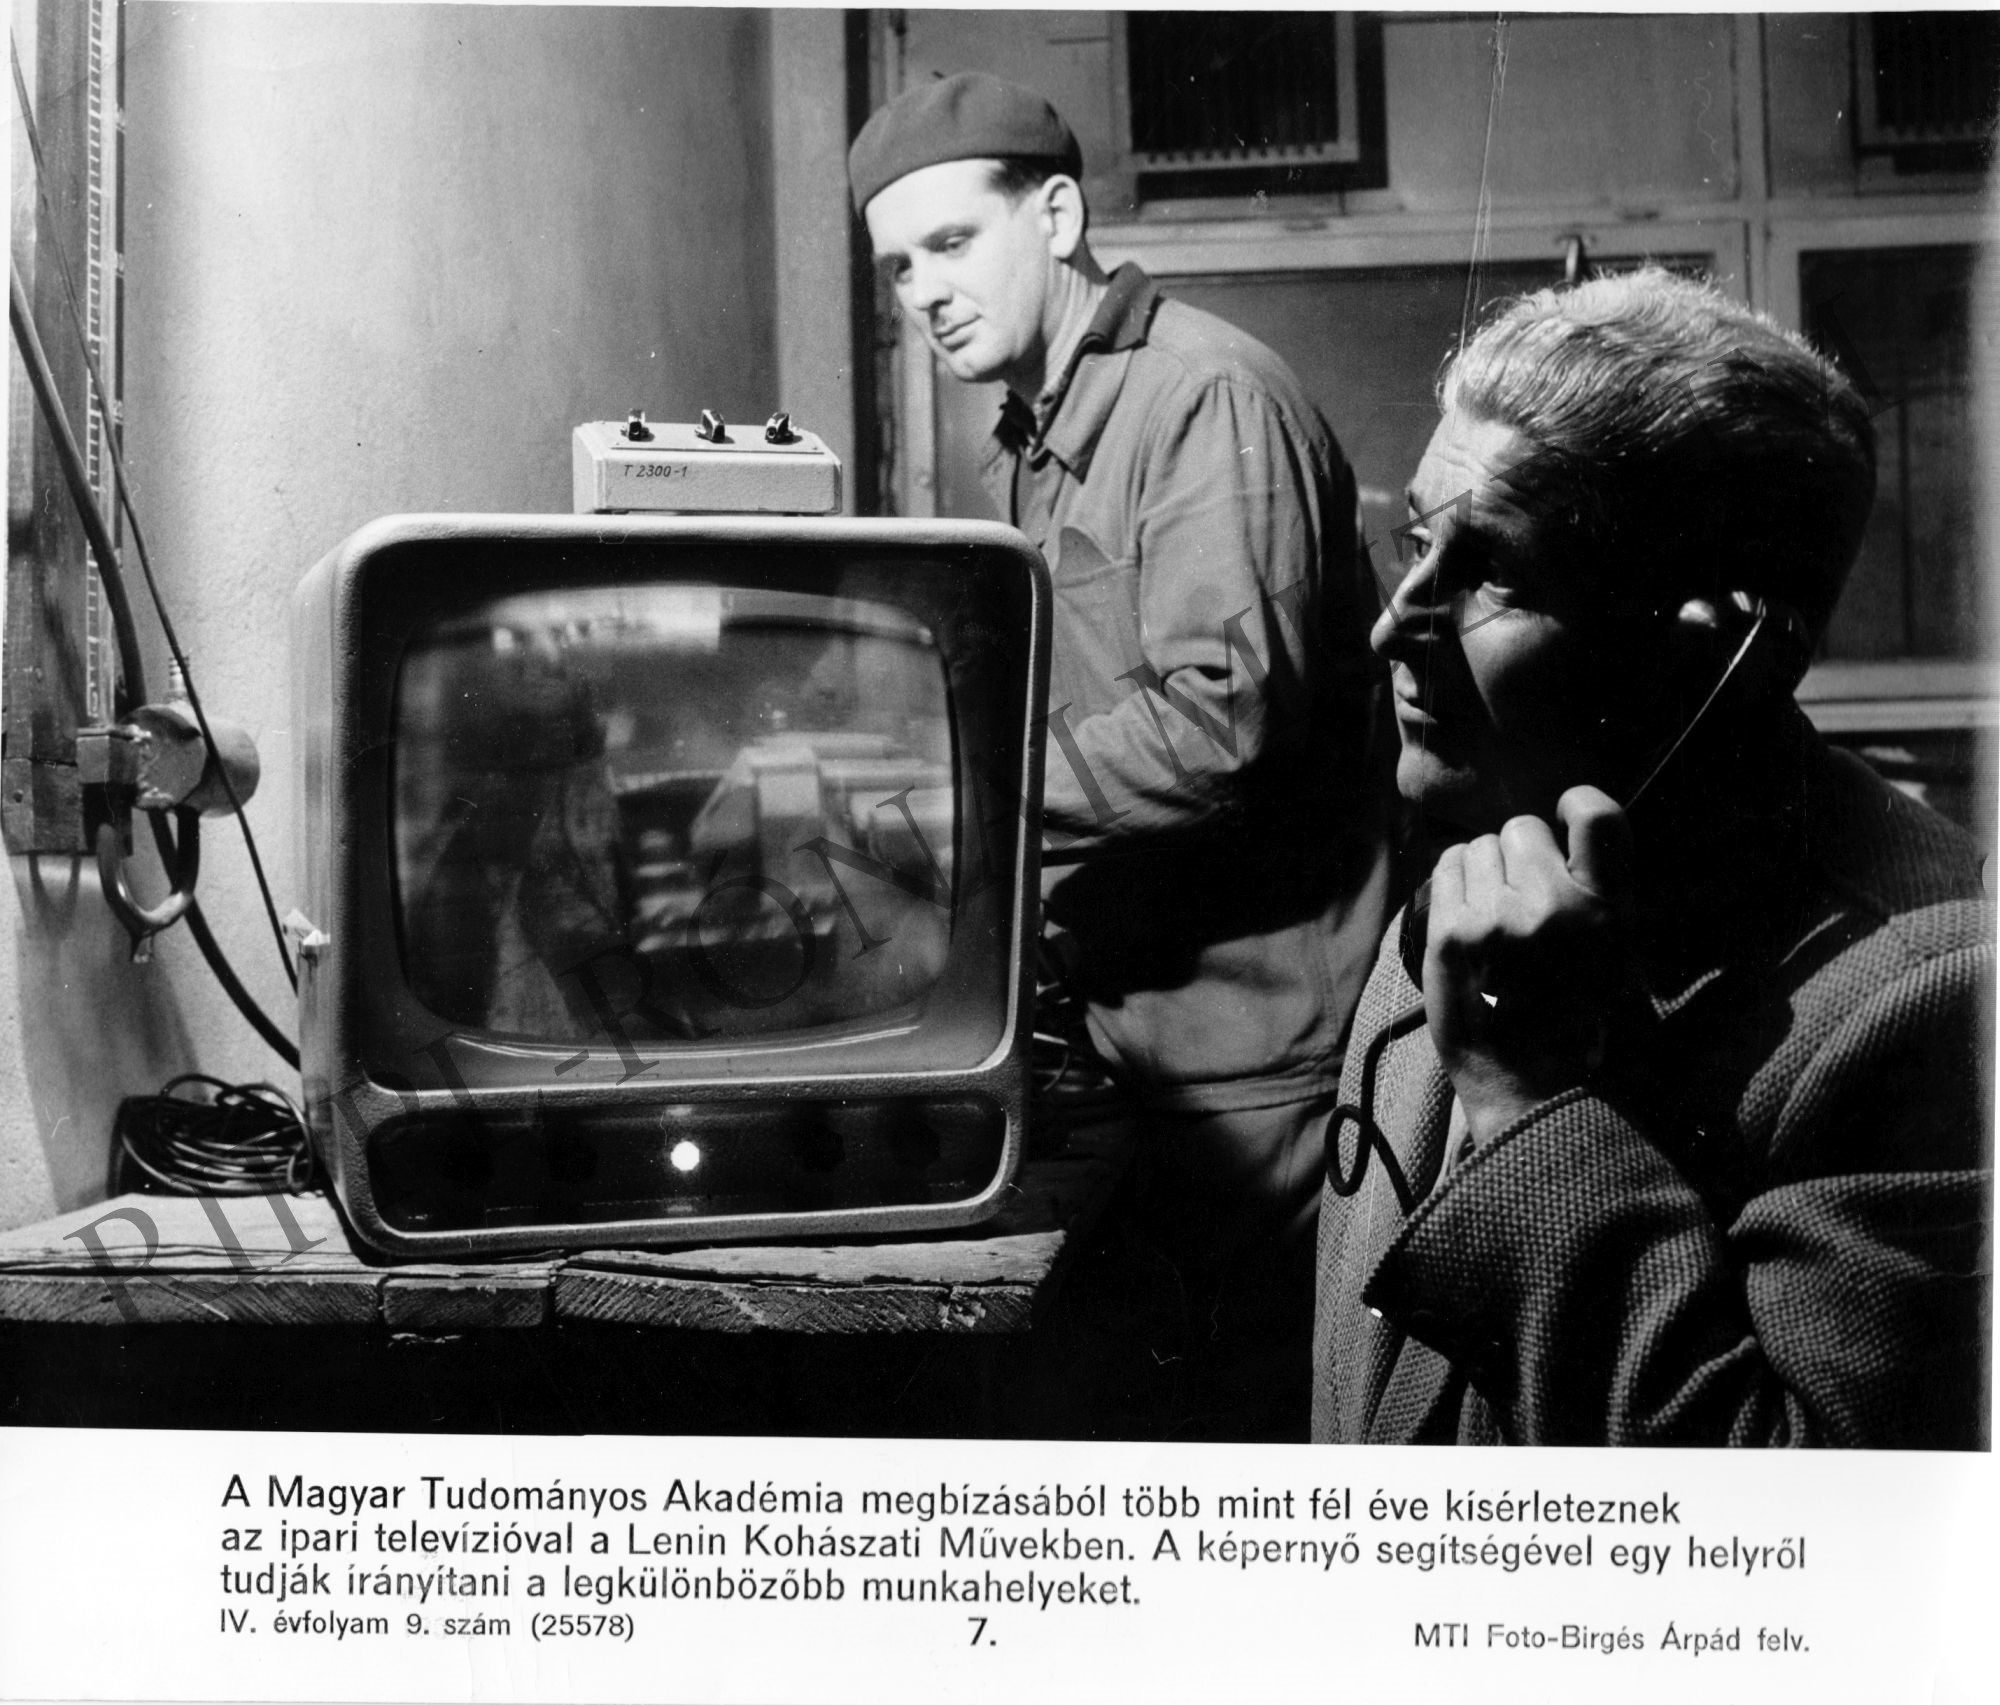 Ipari televízióval kísérleteznek a Lenin Kohászati Művekben az MTA megbízásából (Rippl-Rónai Múzeum CC BY-NC-SA)